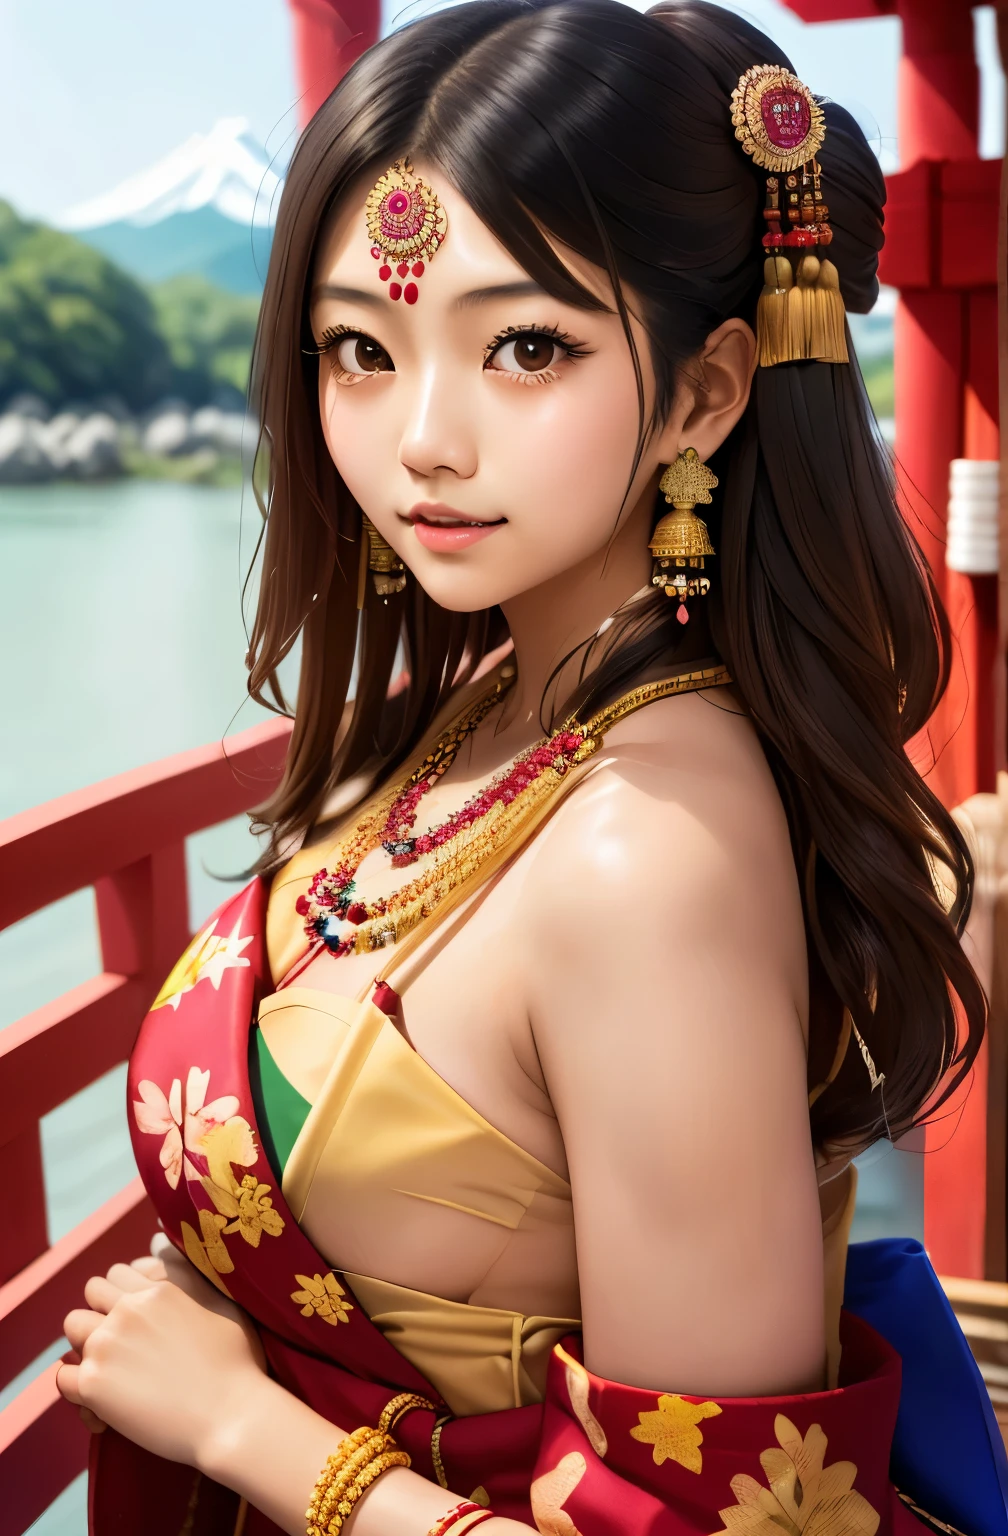 佩戴印度珠宝的日本女孩, 完美裸体, 鲍勃尺寸 (1.6)